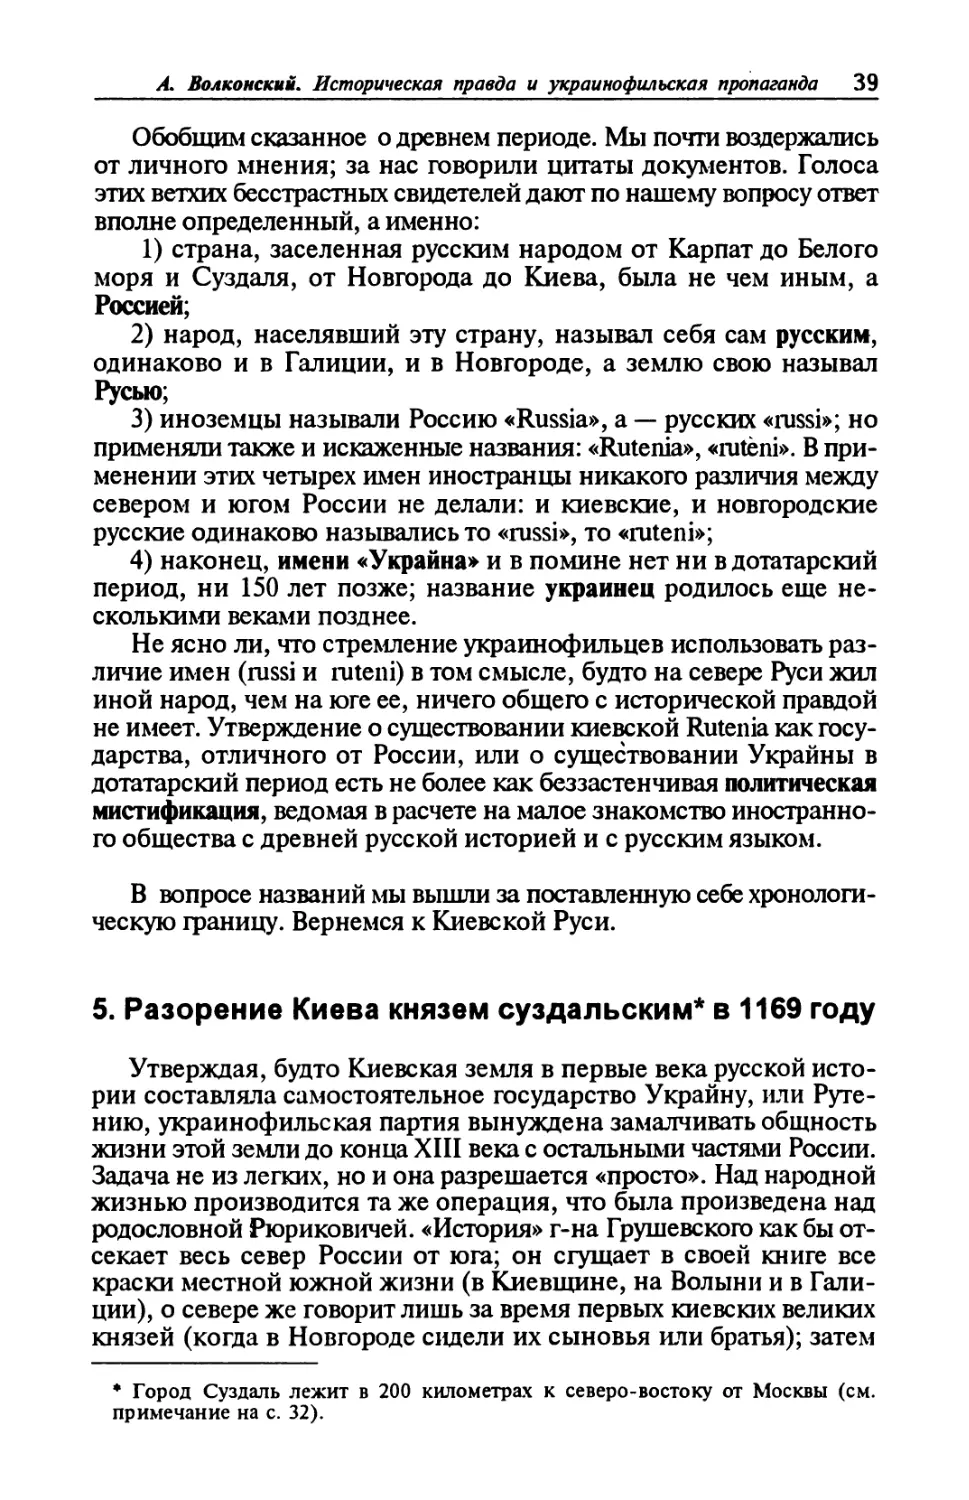 5. Разорение Киева князем суздальским в 1169 году